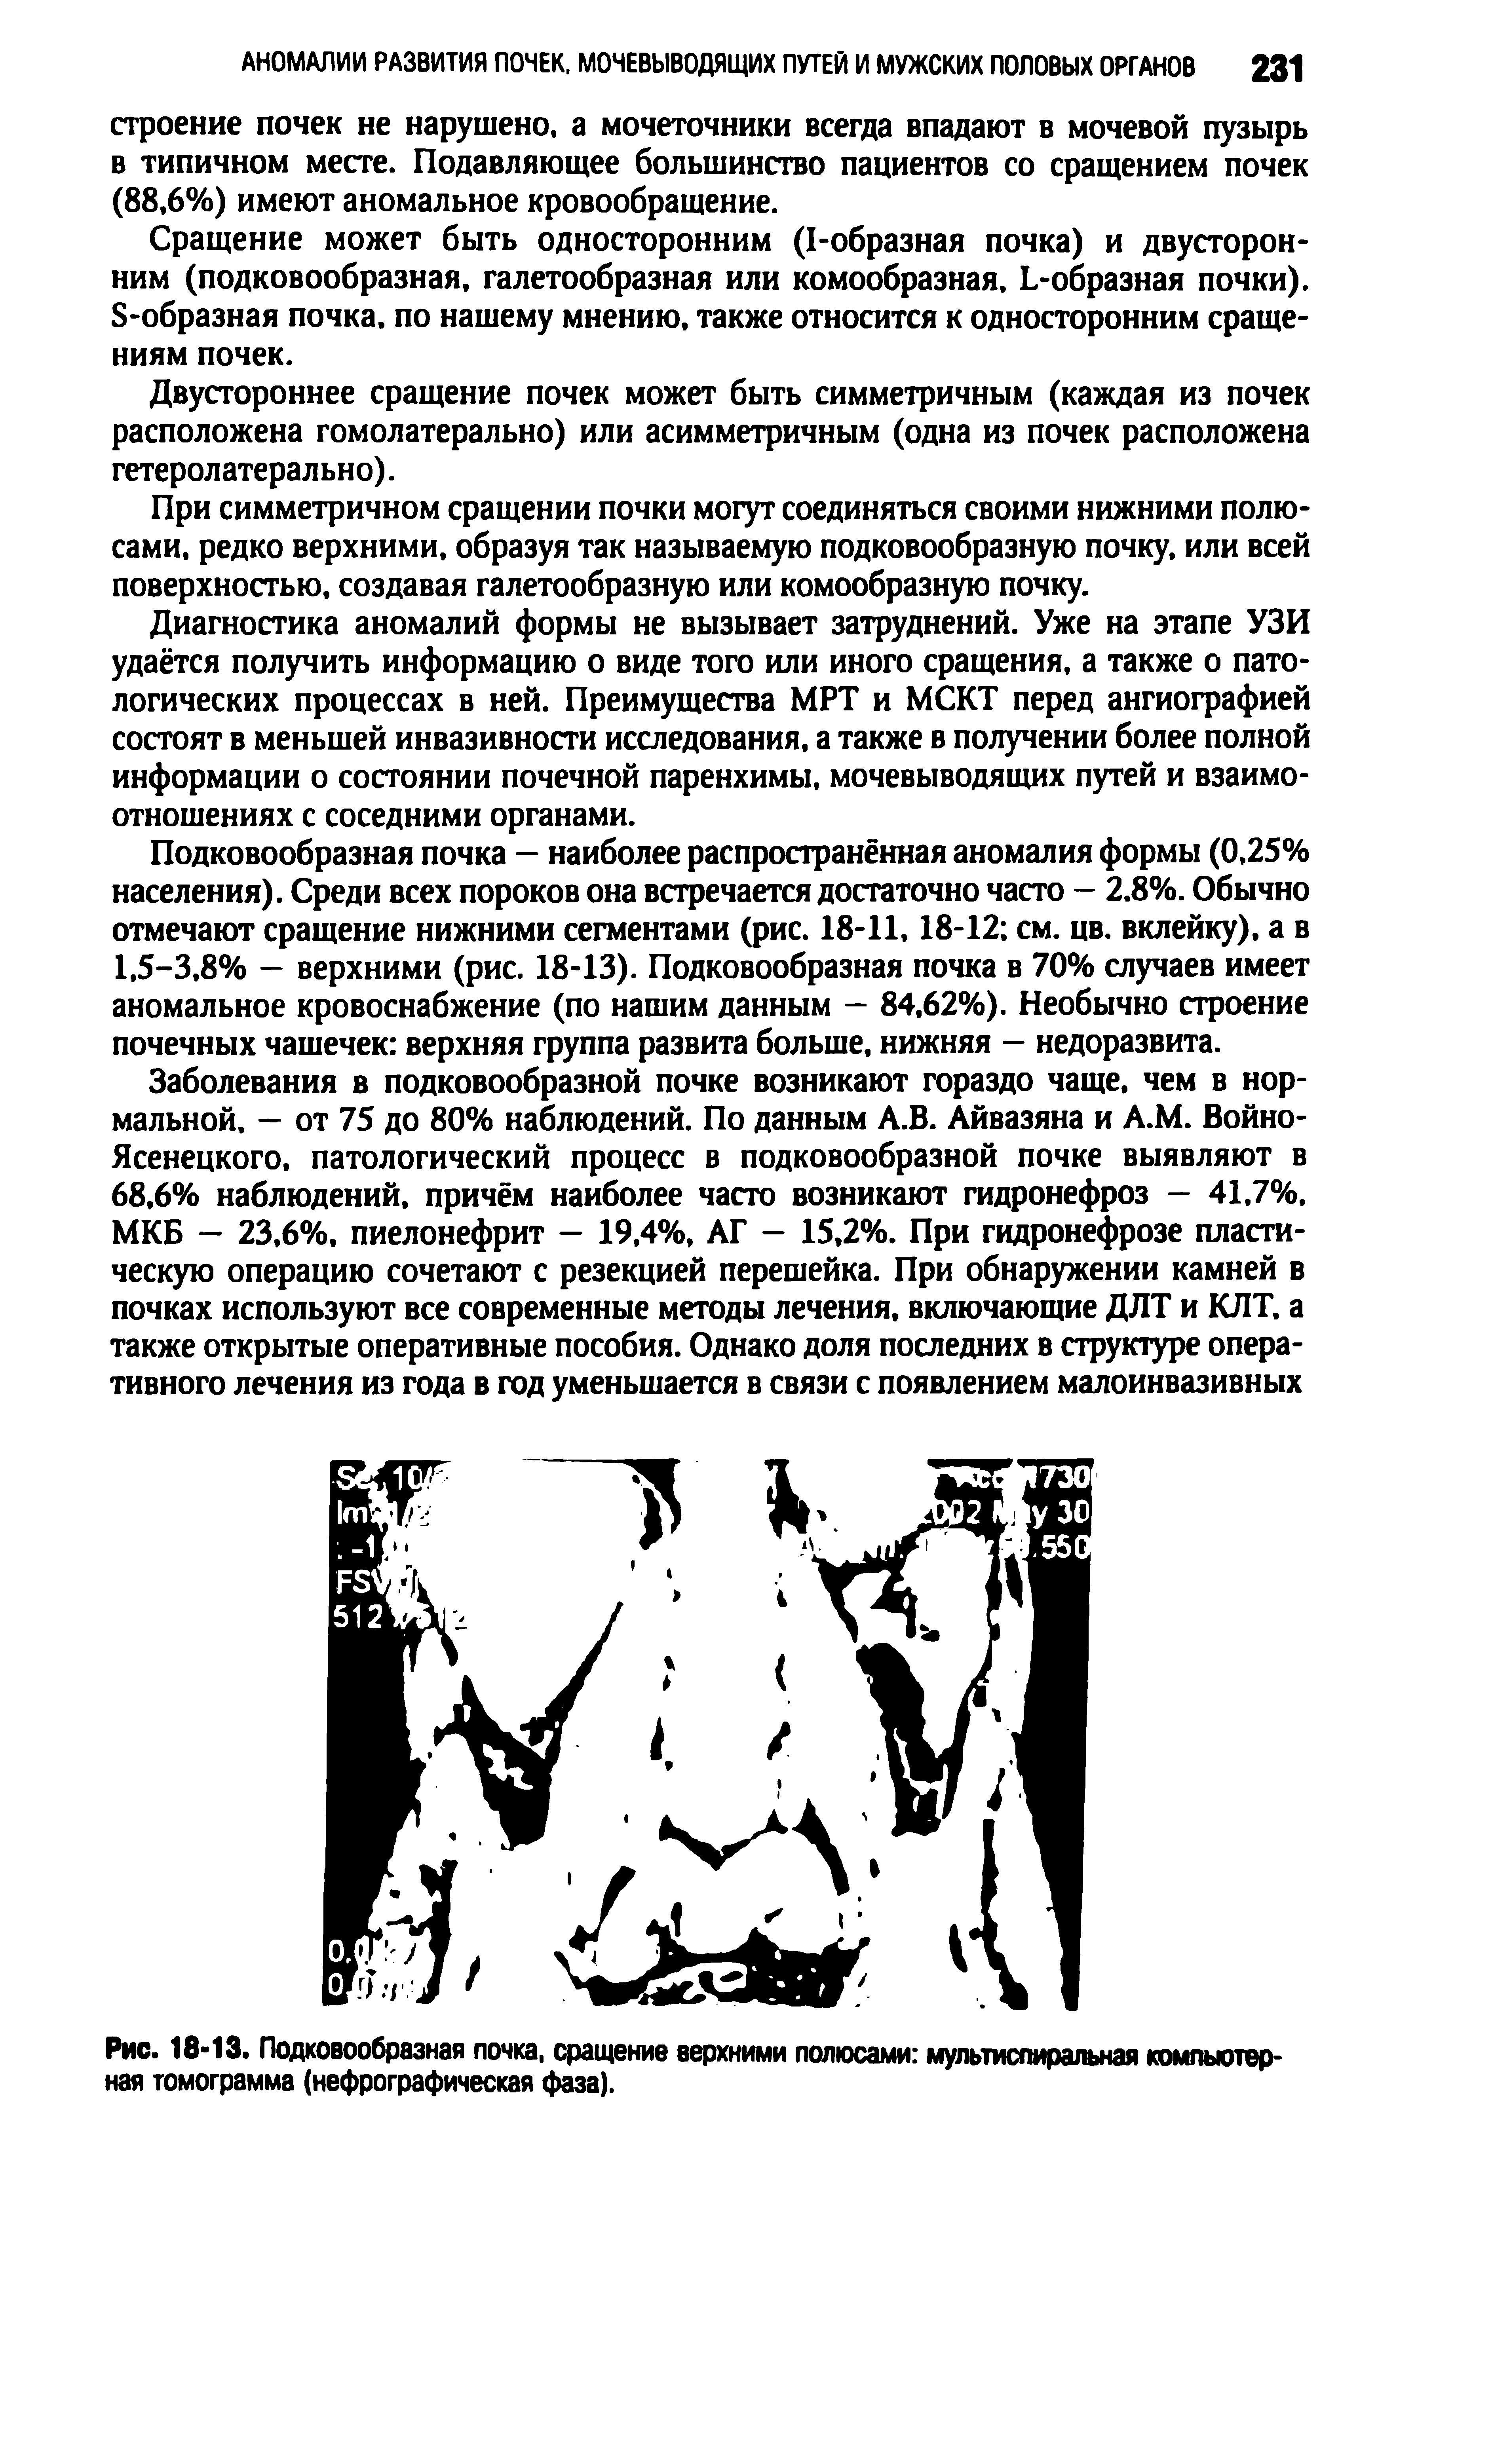 Рис. 18-13. Подковообразная почка, сращение верхними полюсами мультиспиральная компьютерная томограмма (нефрографическая фаза).